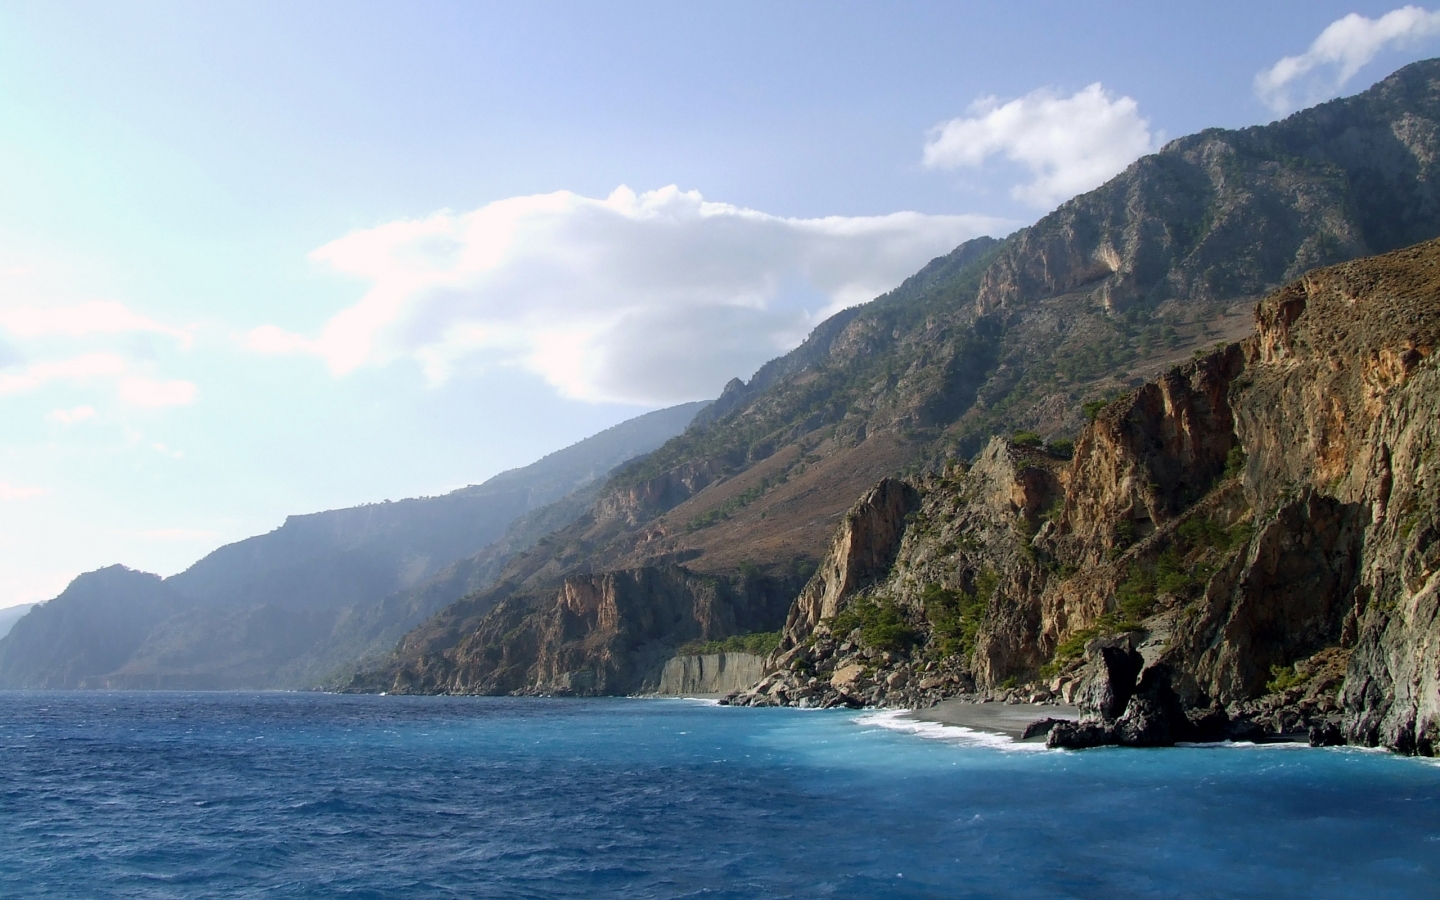 Crete Cliffs for 1440 x 900 widescreen resolution